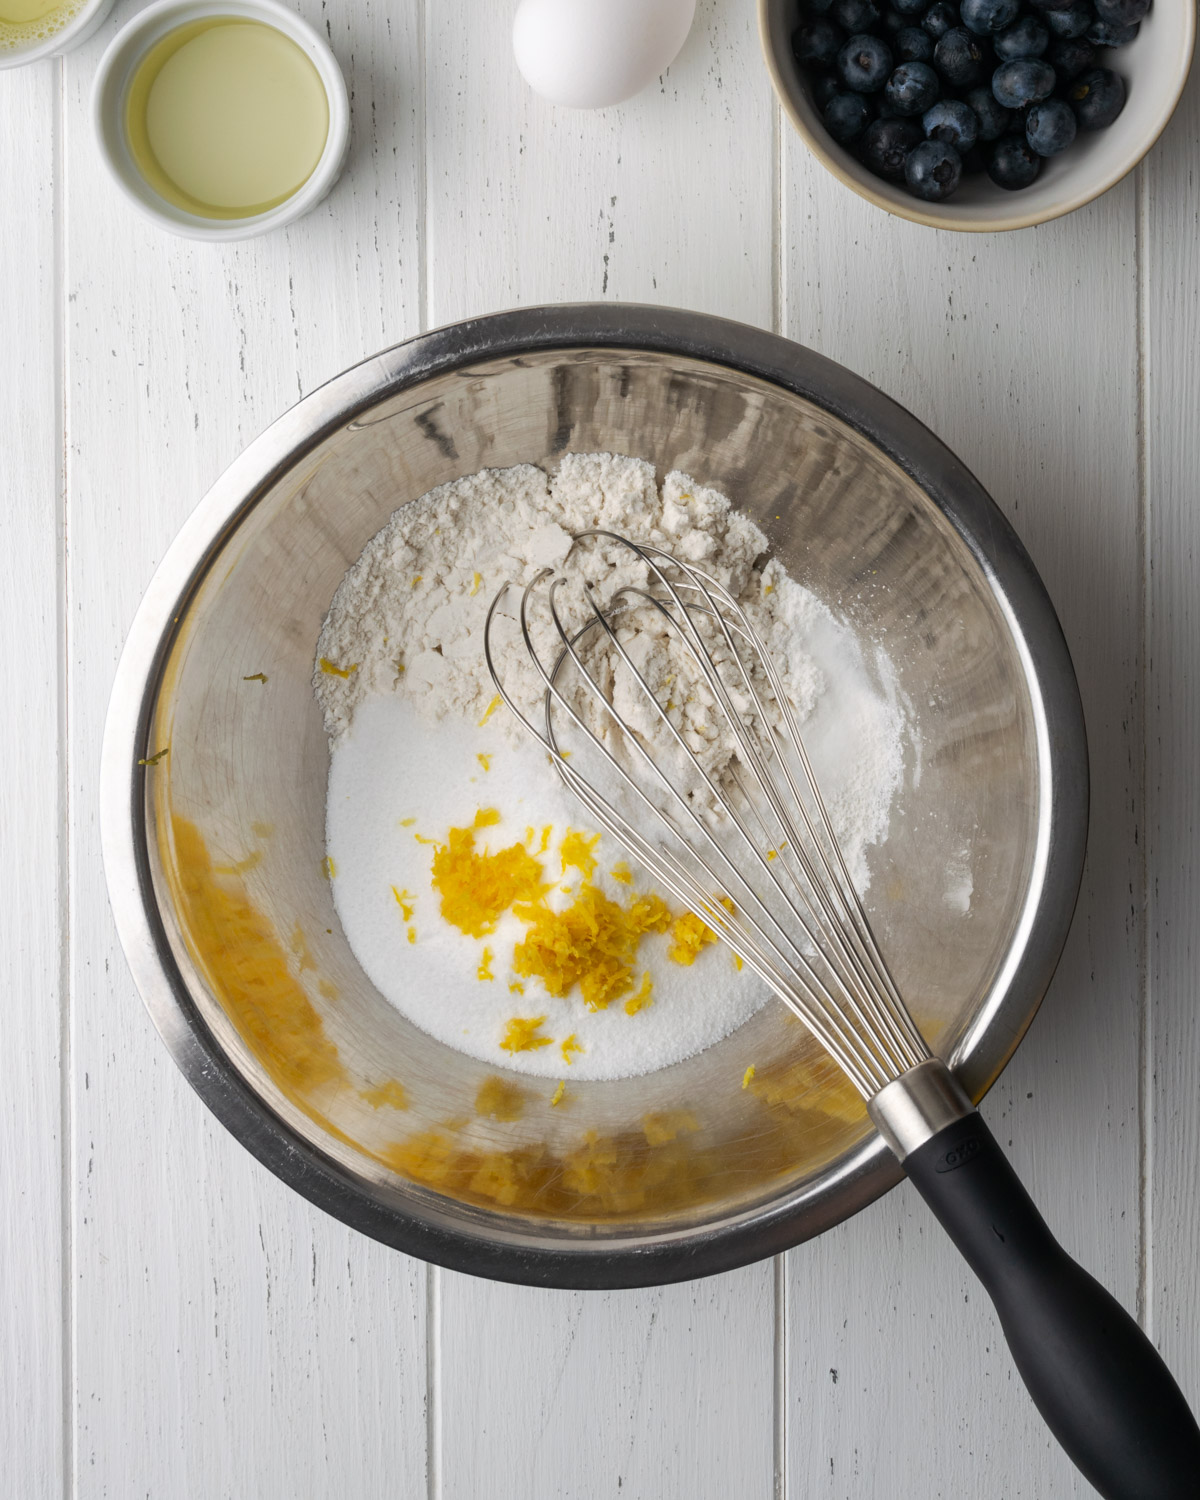 Flour and lemon zest in a metal bowl.